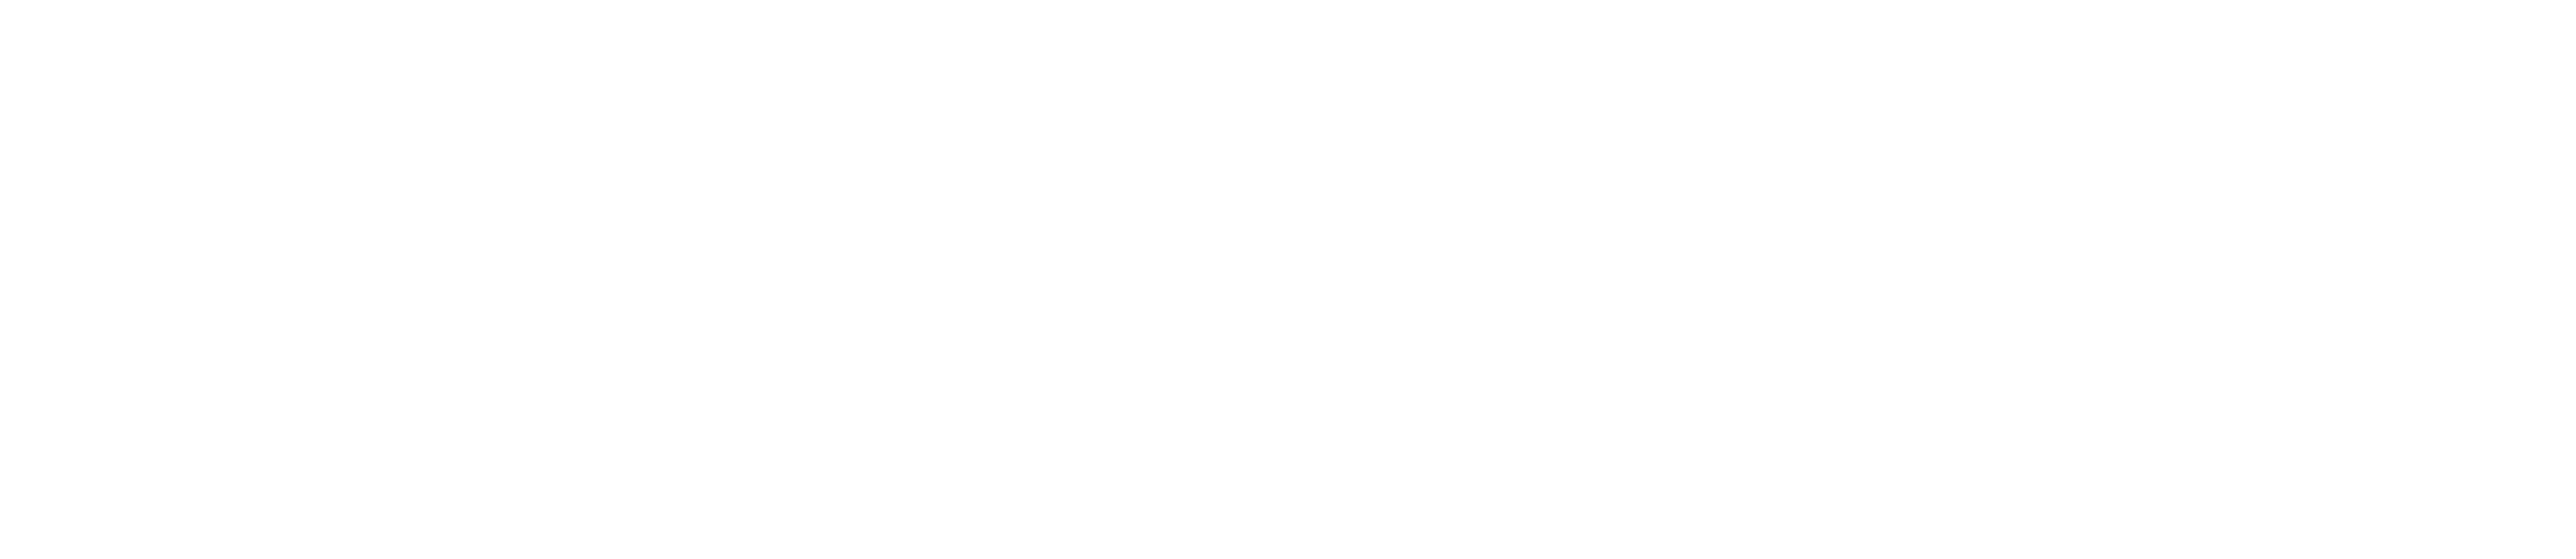 study buddy logo